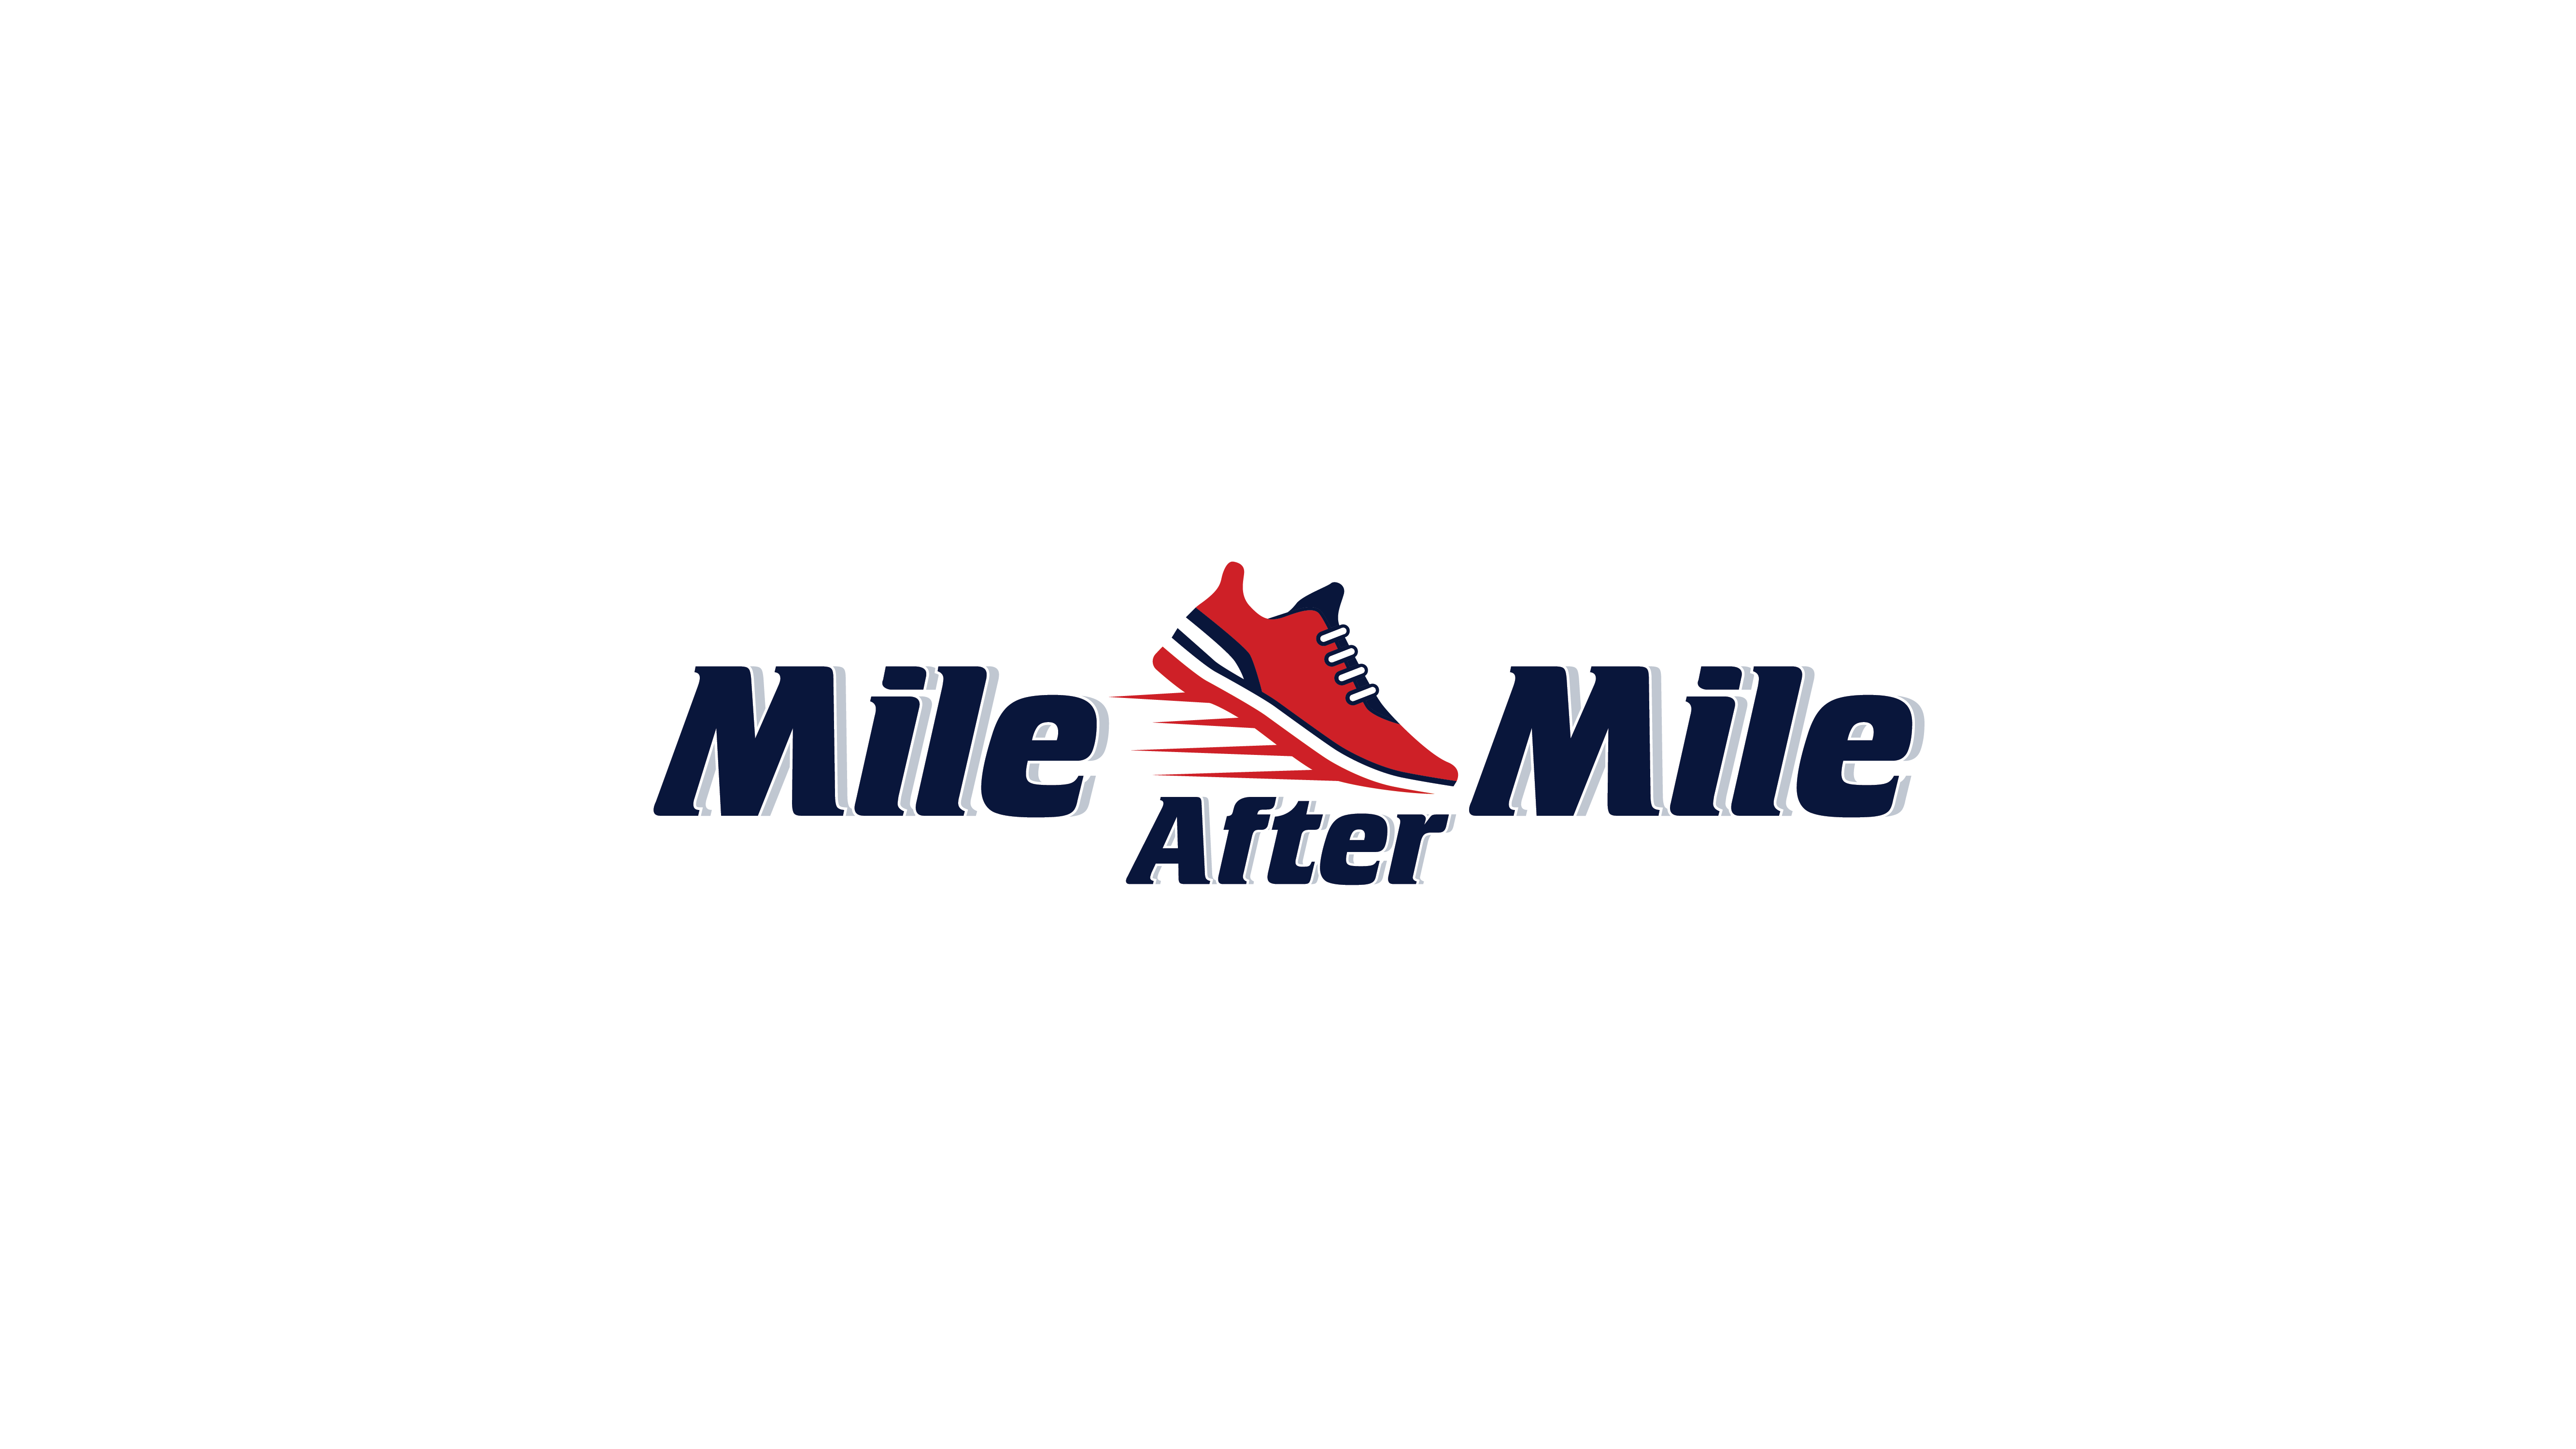 Mile After Mile